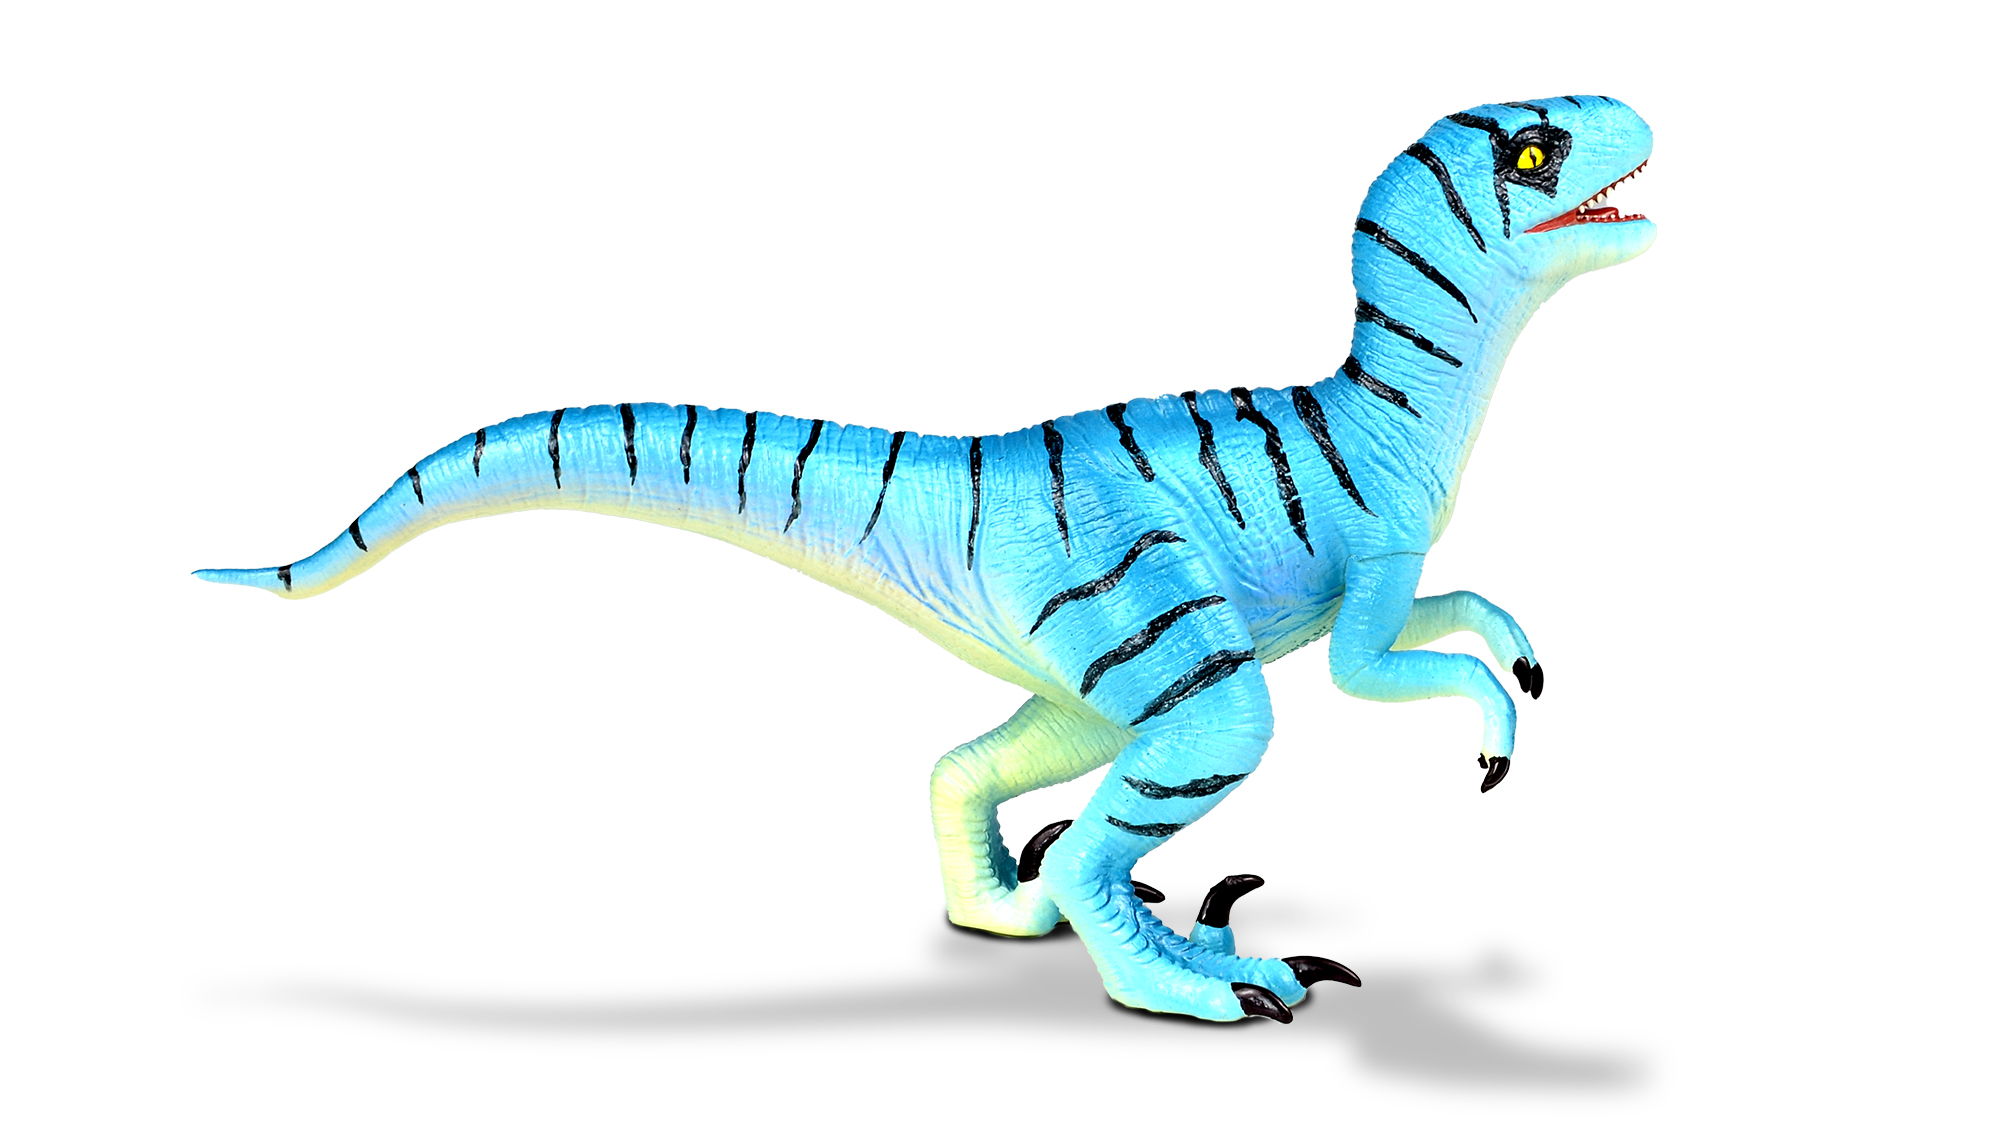 Young Velociraptor toy - Jurassic world dinosaur toy